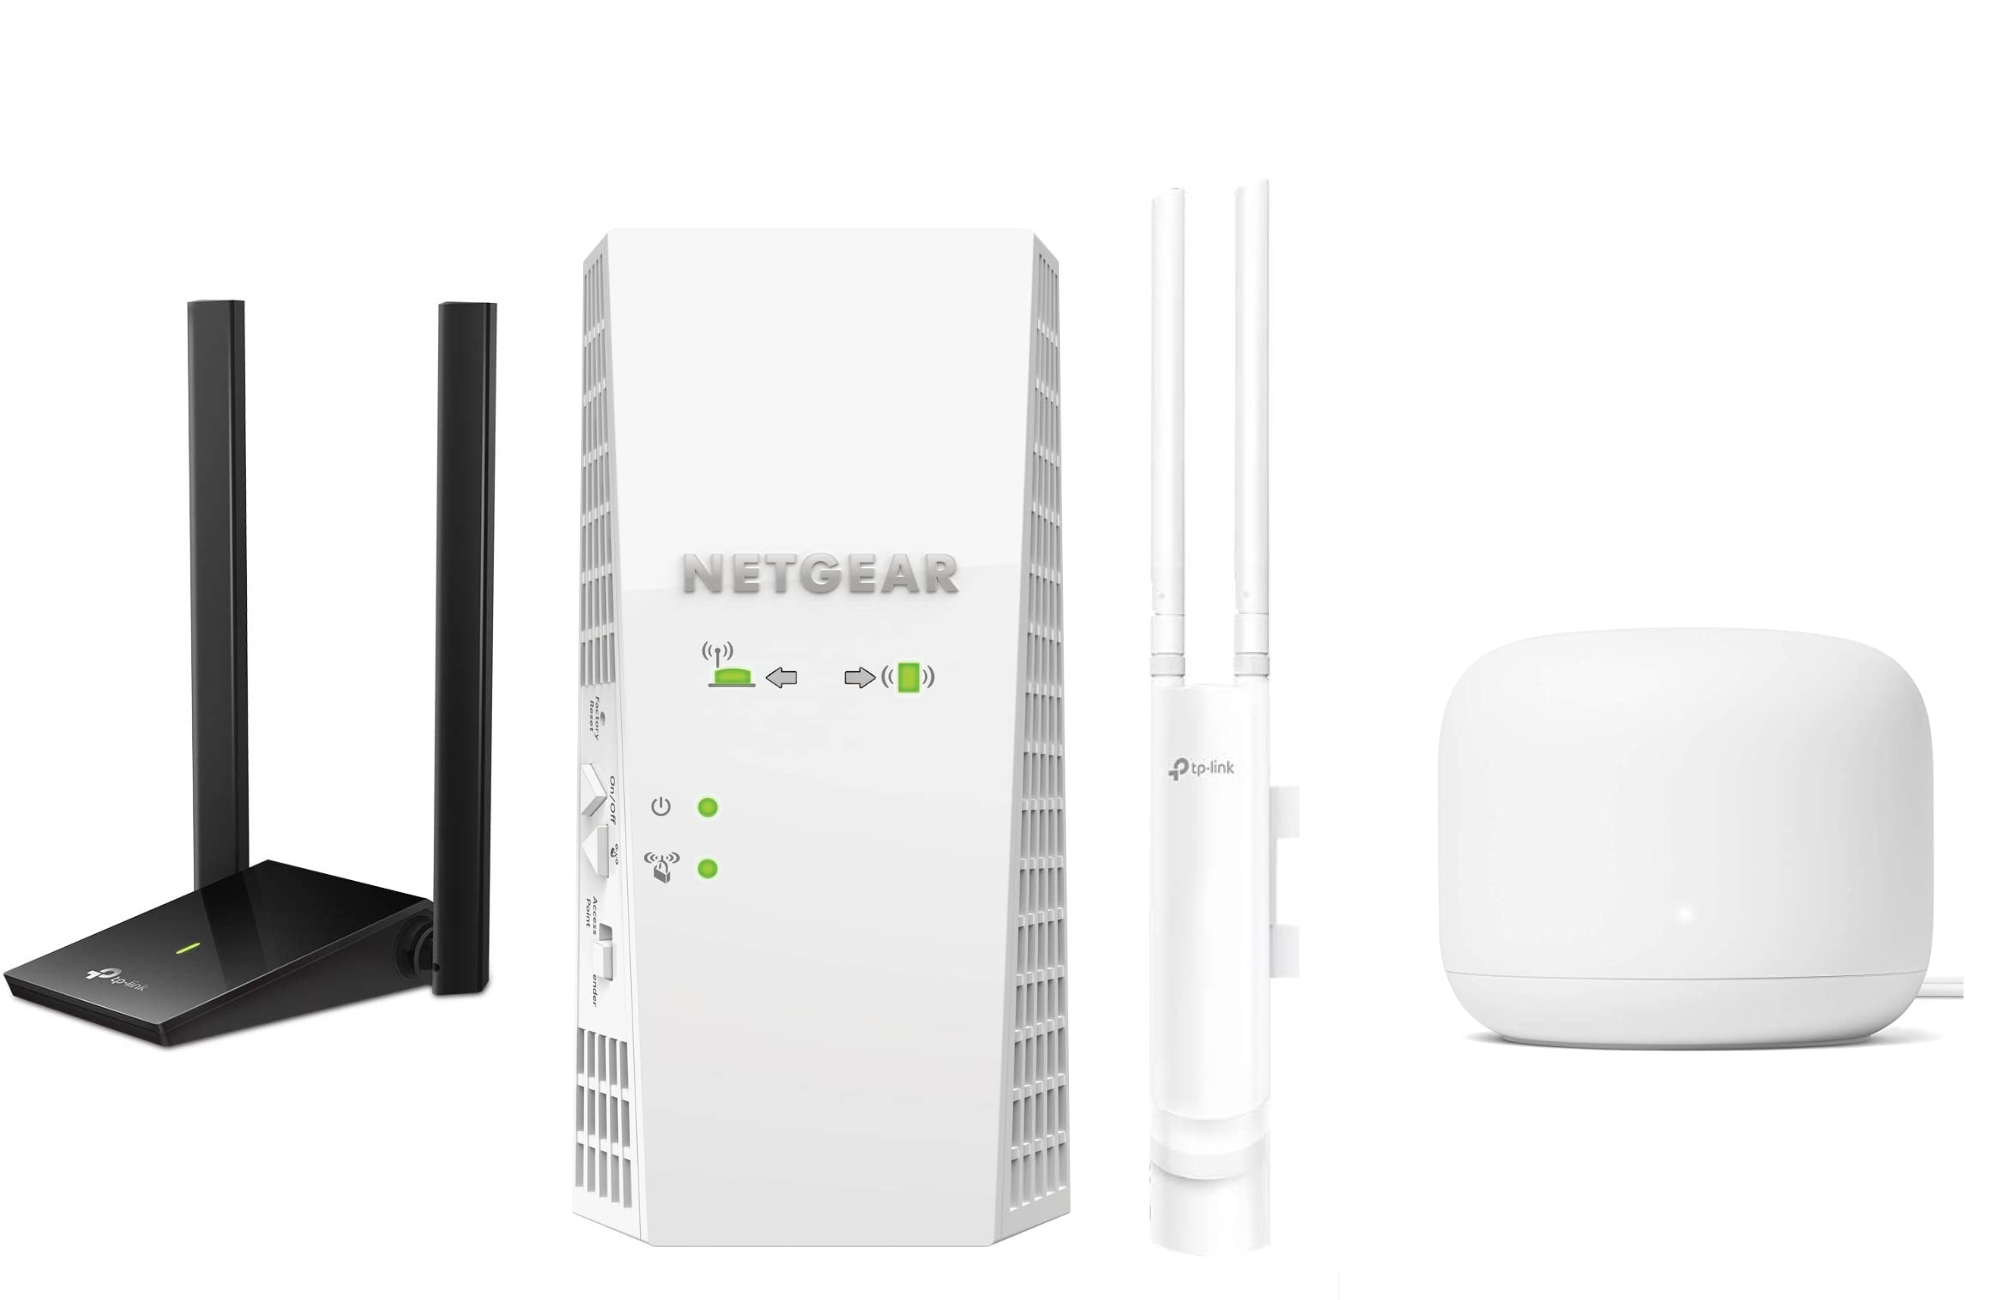 Shop NETGEAR, WiFi Routers, Mesh WiFi Systems, WiFi Extenders